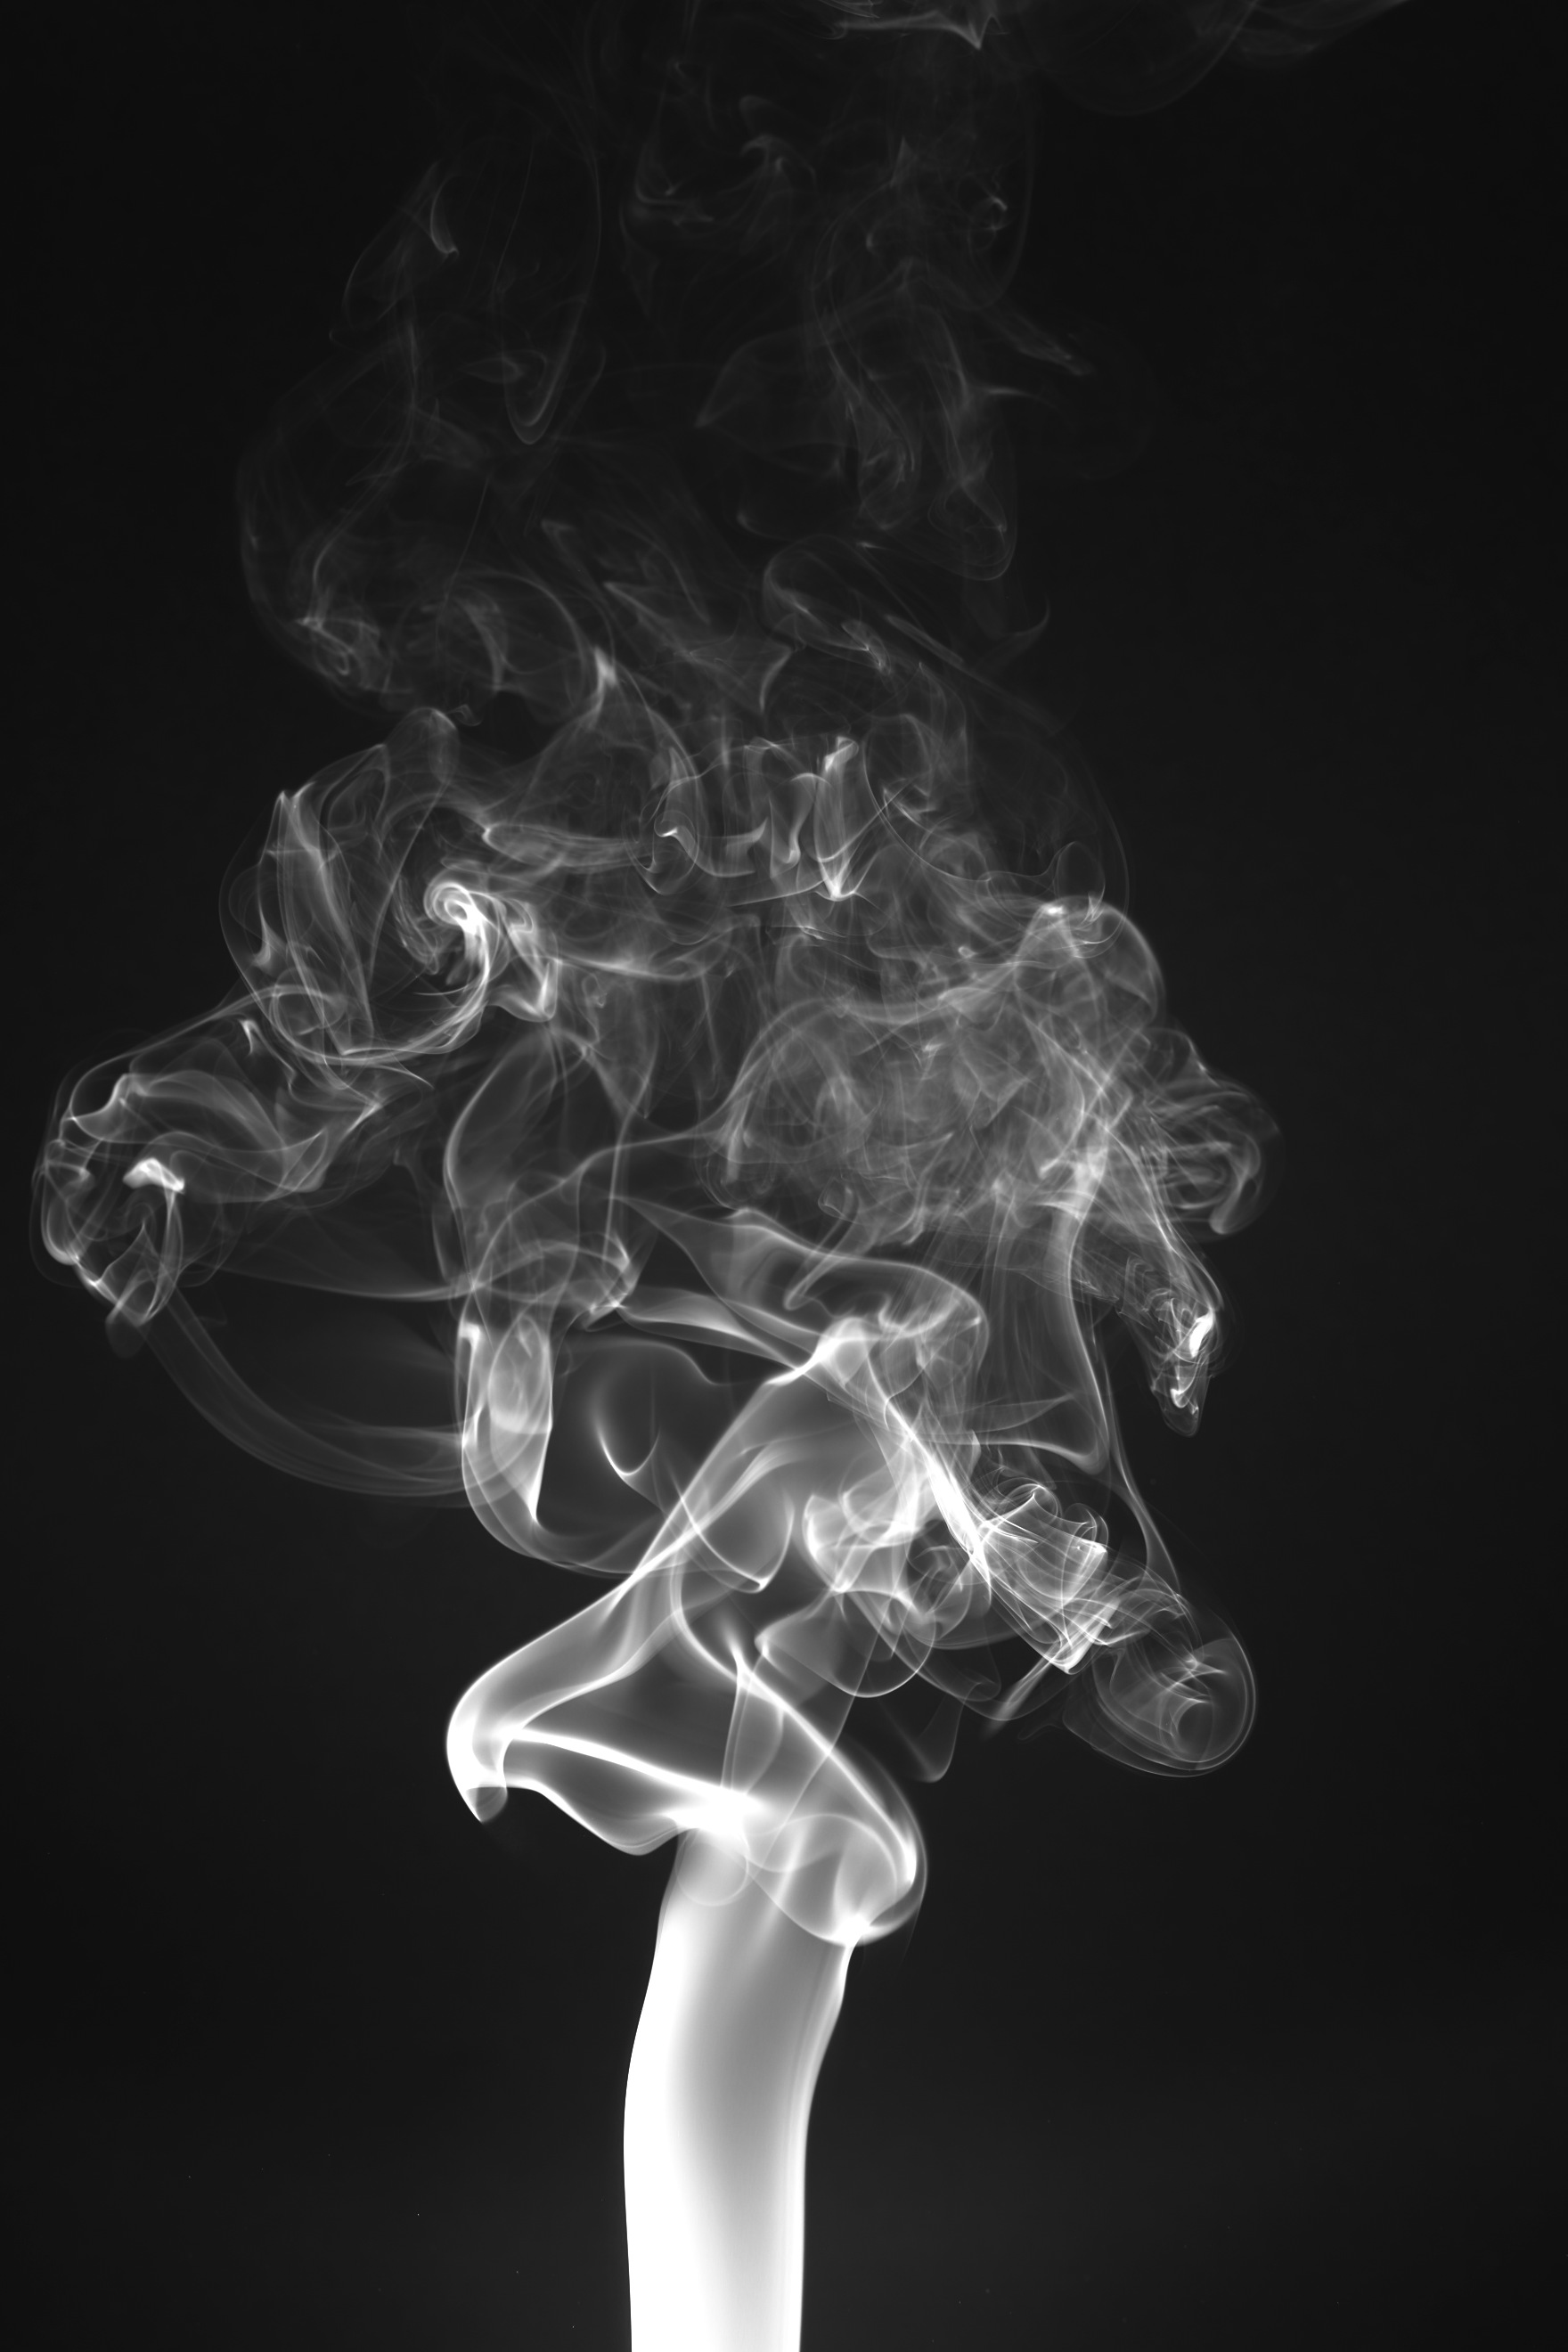 File:Smoke photography smoke 3.jpg - Wikimedia Commons